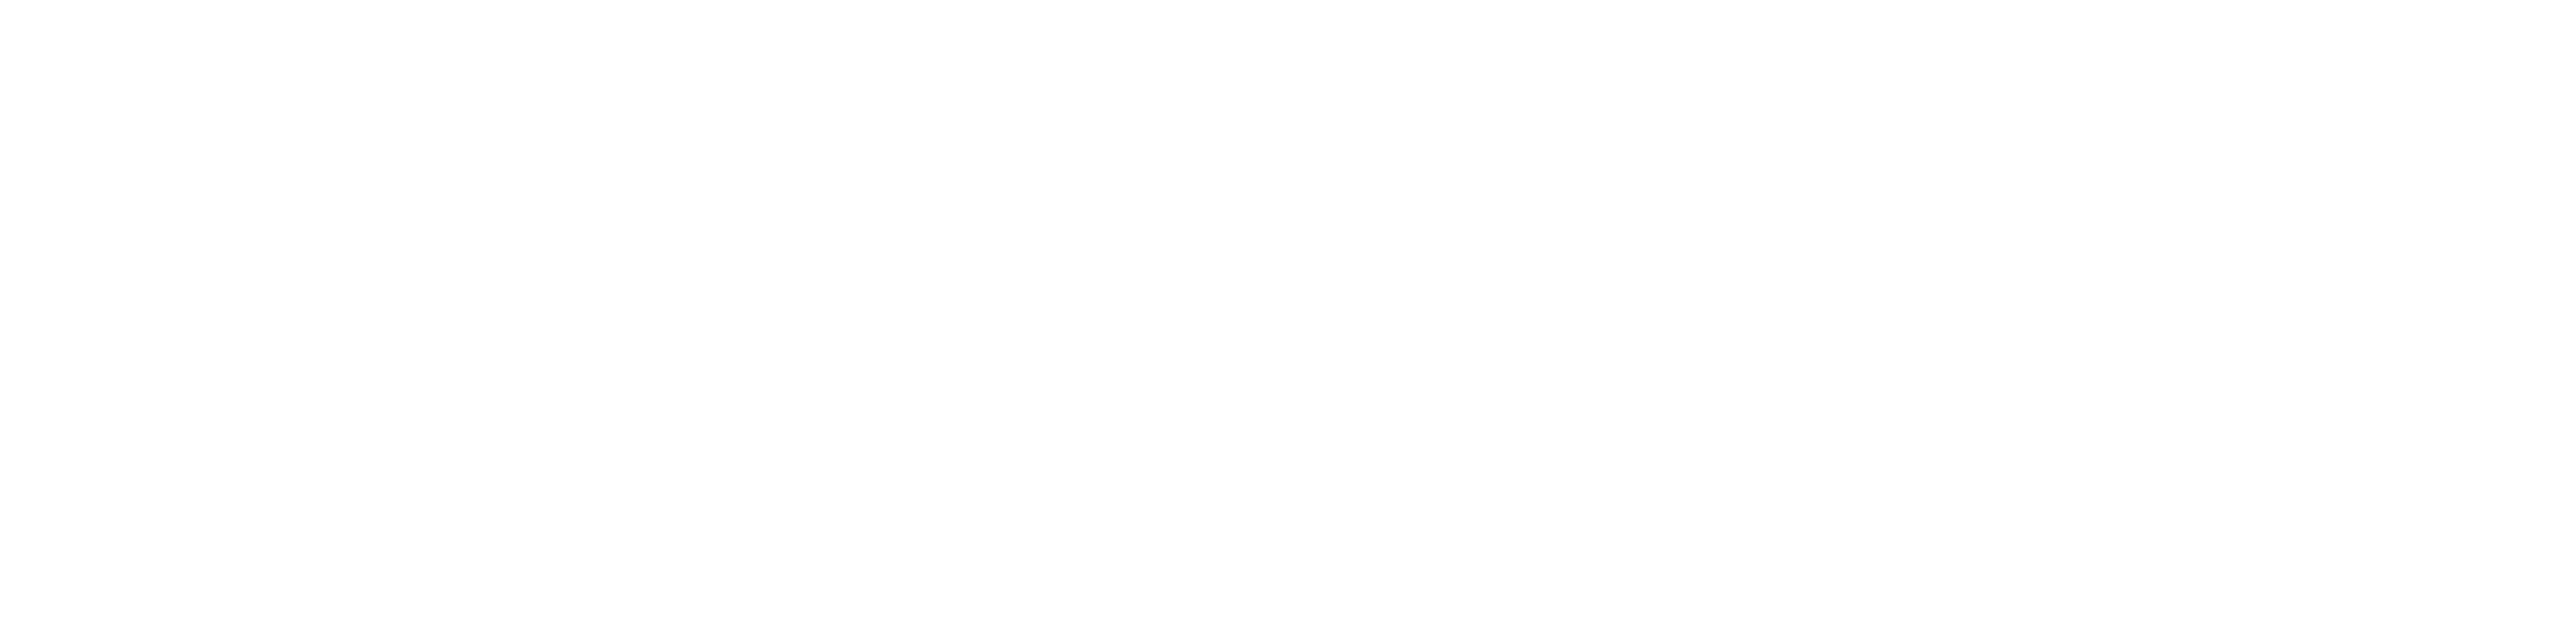 P&M-લોગો